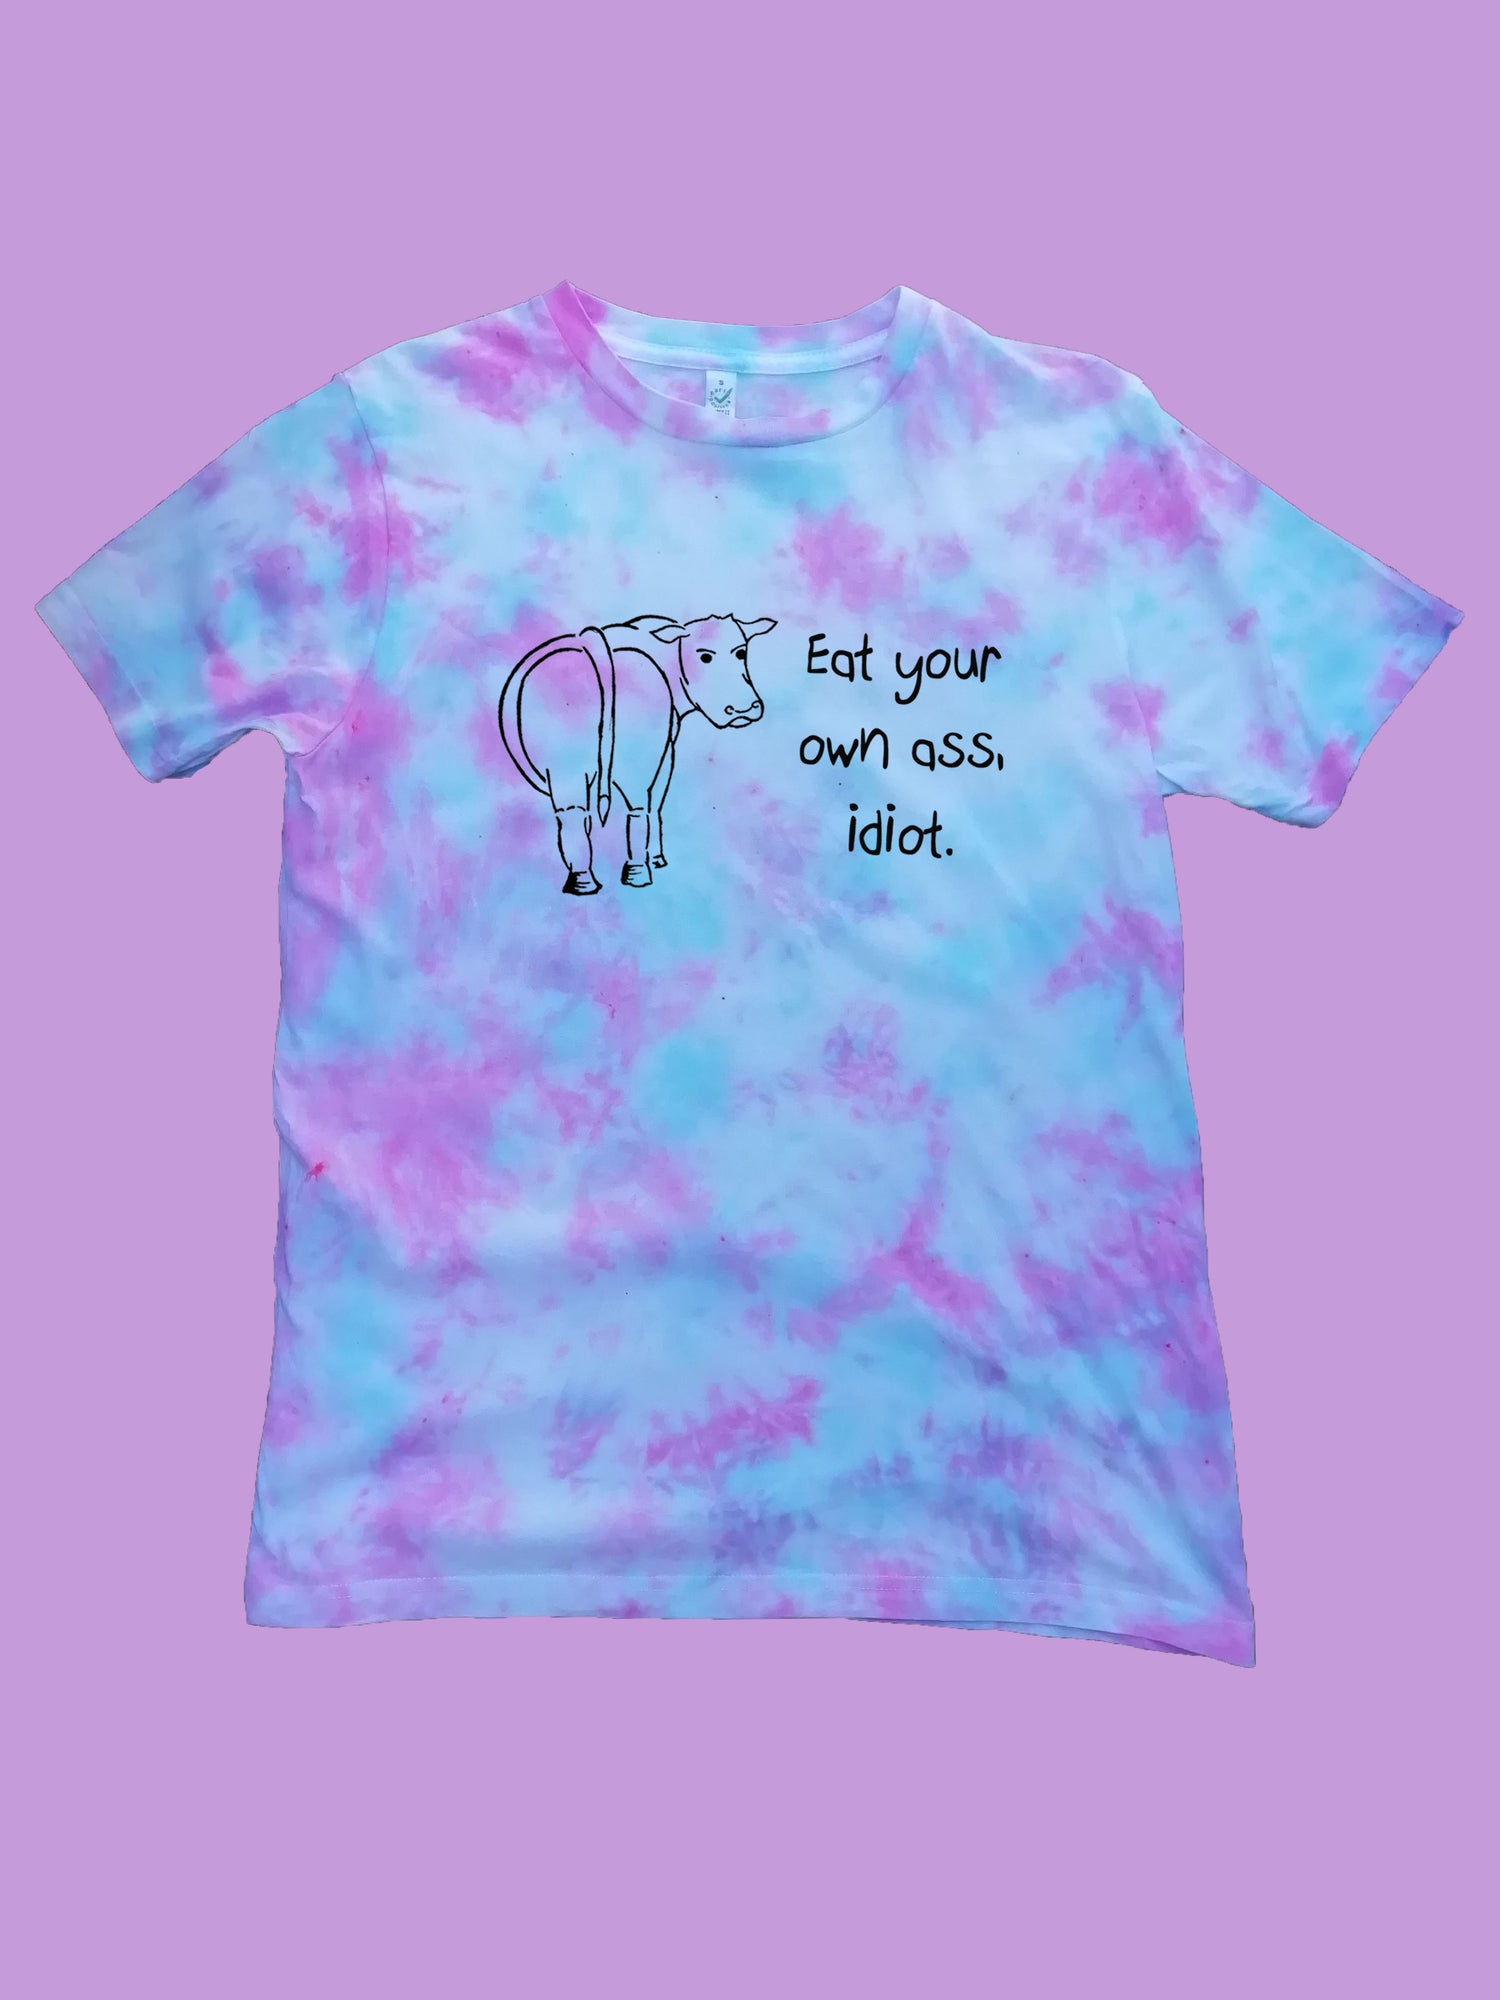 Eat Your Own Ass Idiot, Vegan Organic T- Shirt